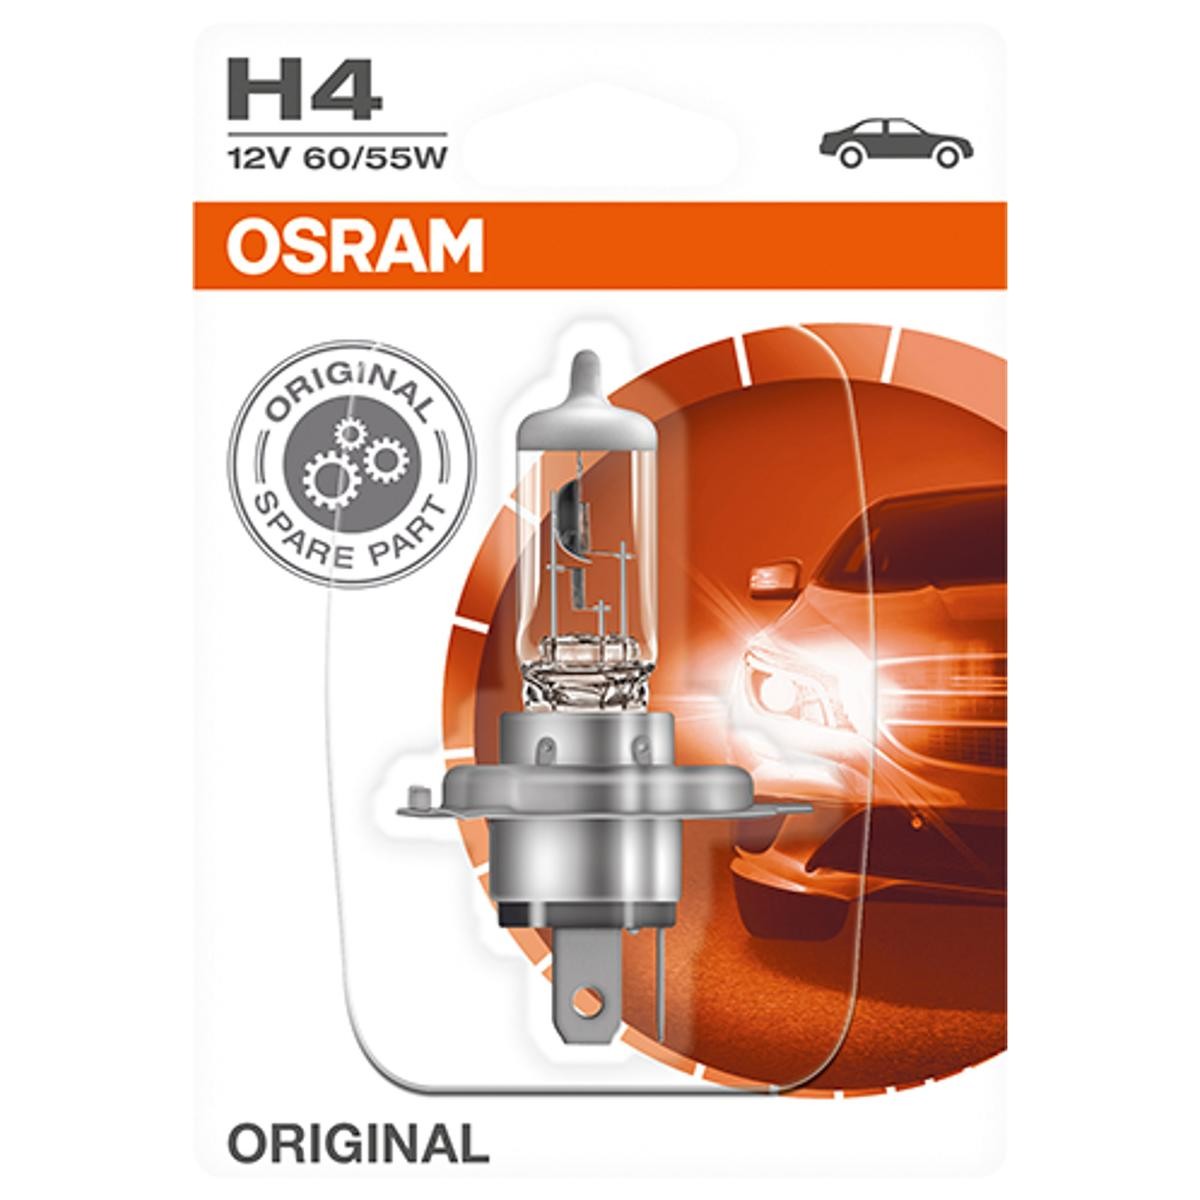 H4 OSRAM ORIGINAL H4 12V 60/55W P43t 3200K Halogen Żarówka, reflektor dalekosiężny 64193-01B kupić niedrogo